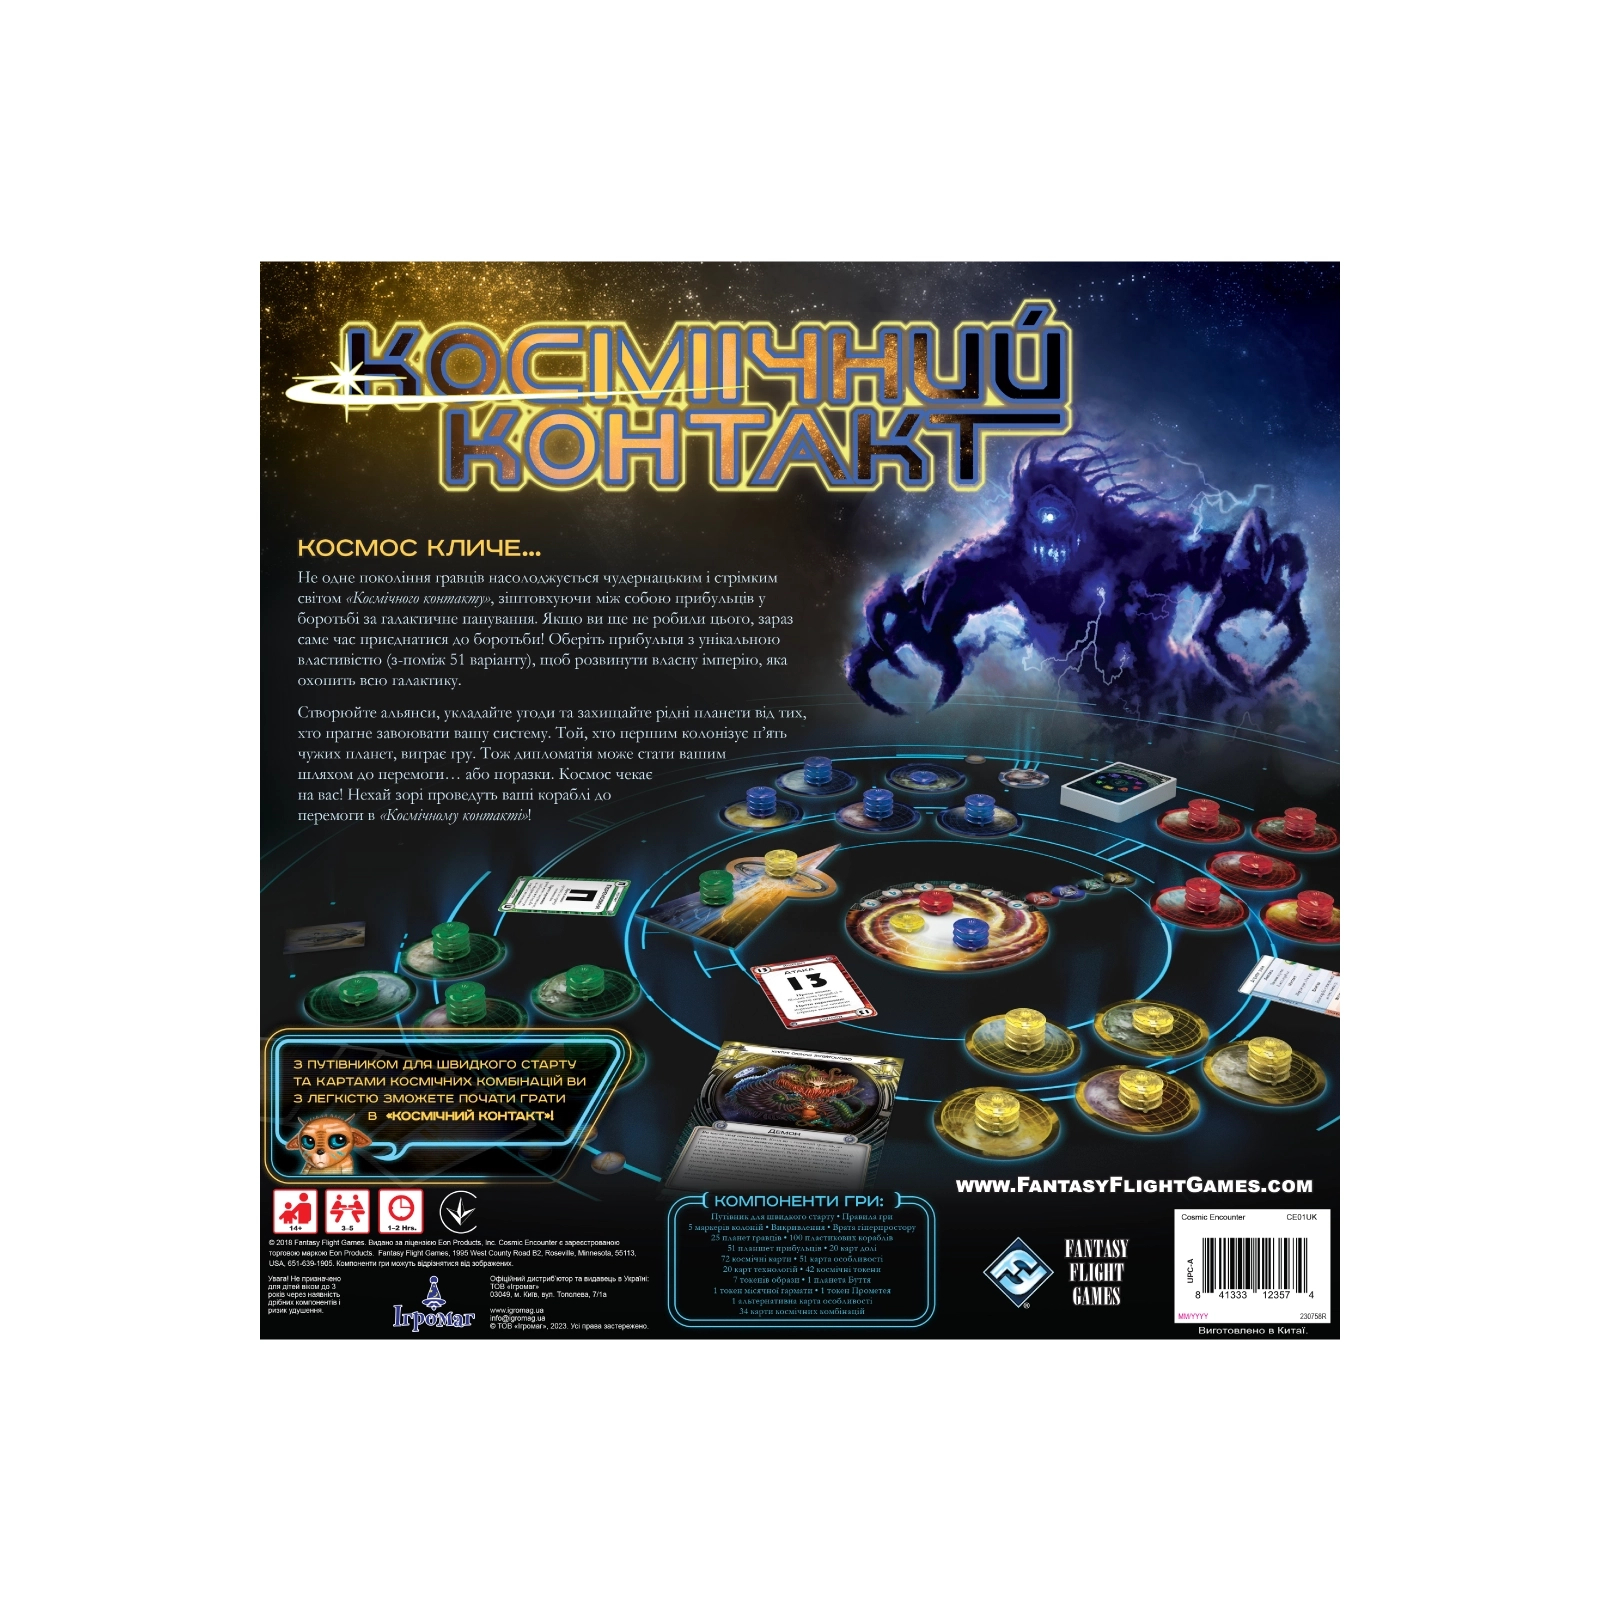 Настольная игра Ігромаг Космический Контакт (Cosmic Encounter: 42nd Anniversary Edition) украинский (FFGCE01UA) изображение 3